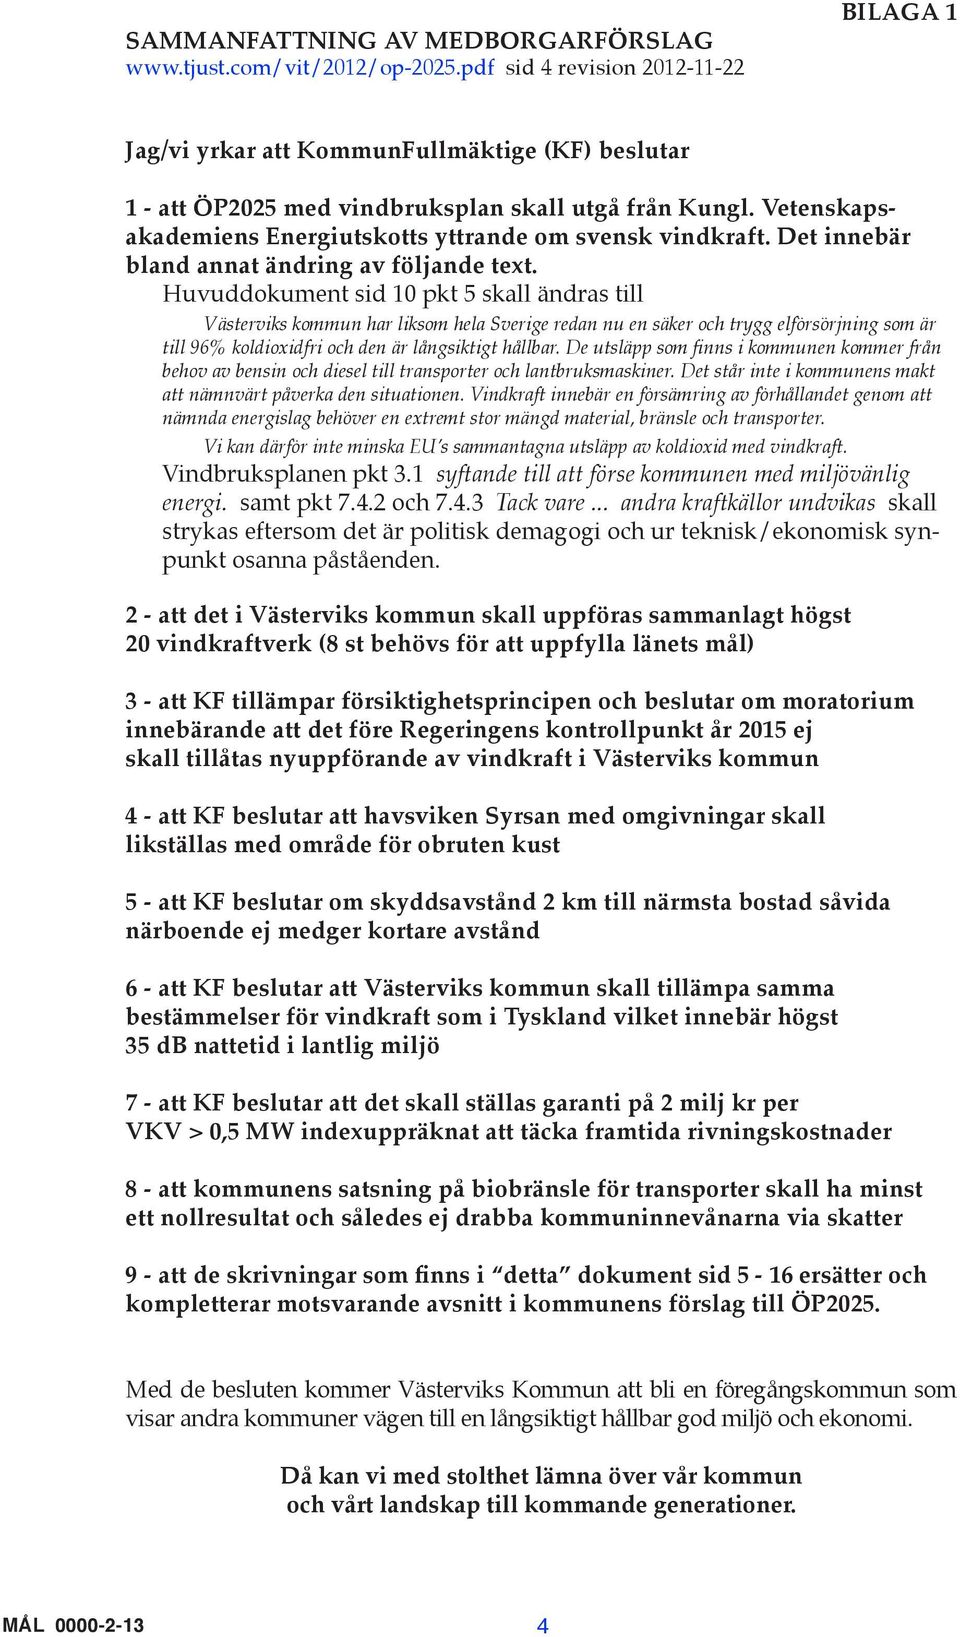 Vetenskapsakademiens Energiutskotts yttrande om svensk vindkraft. Det innebär bland annat ändring av följande text.